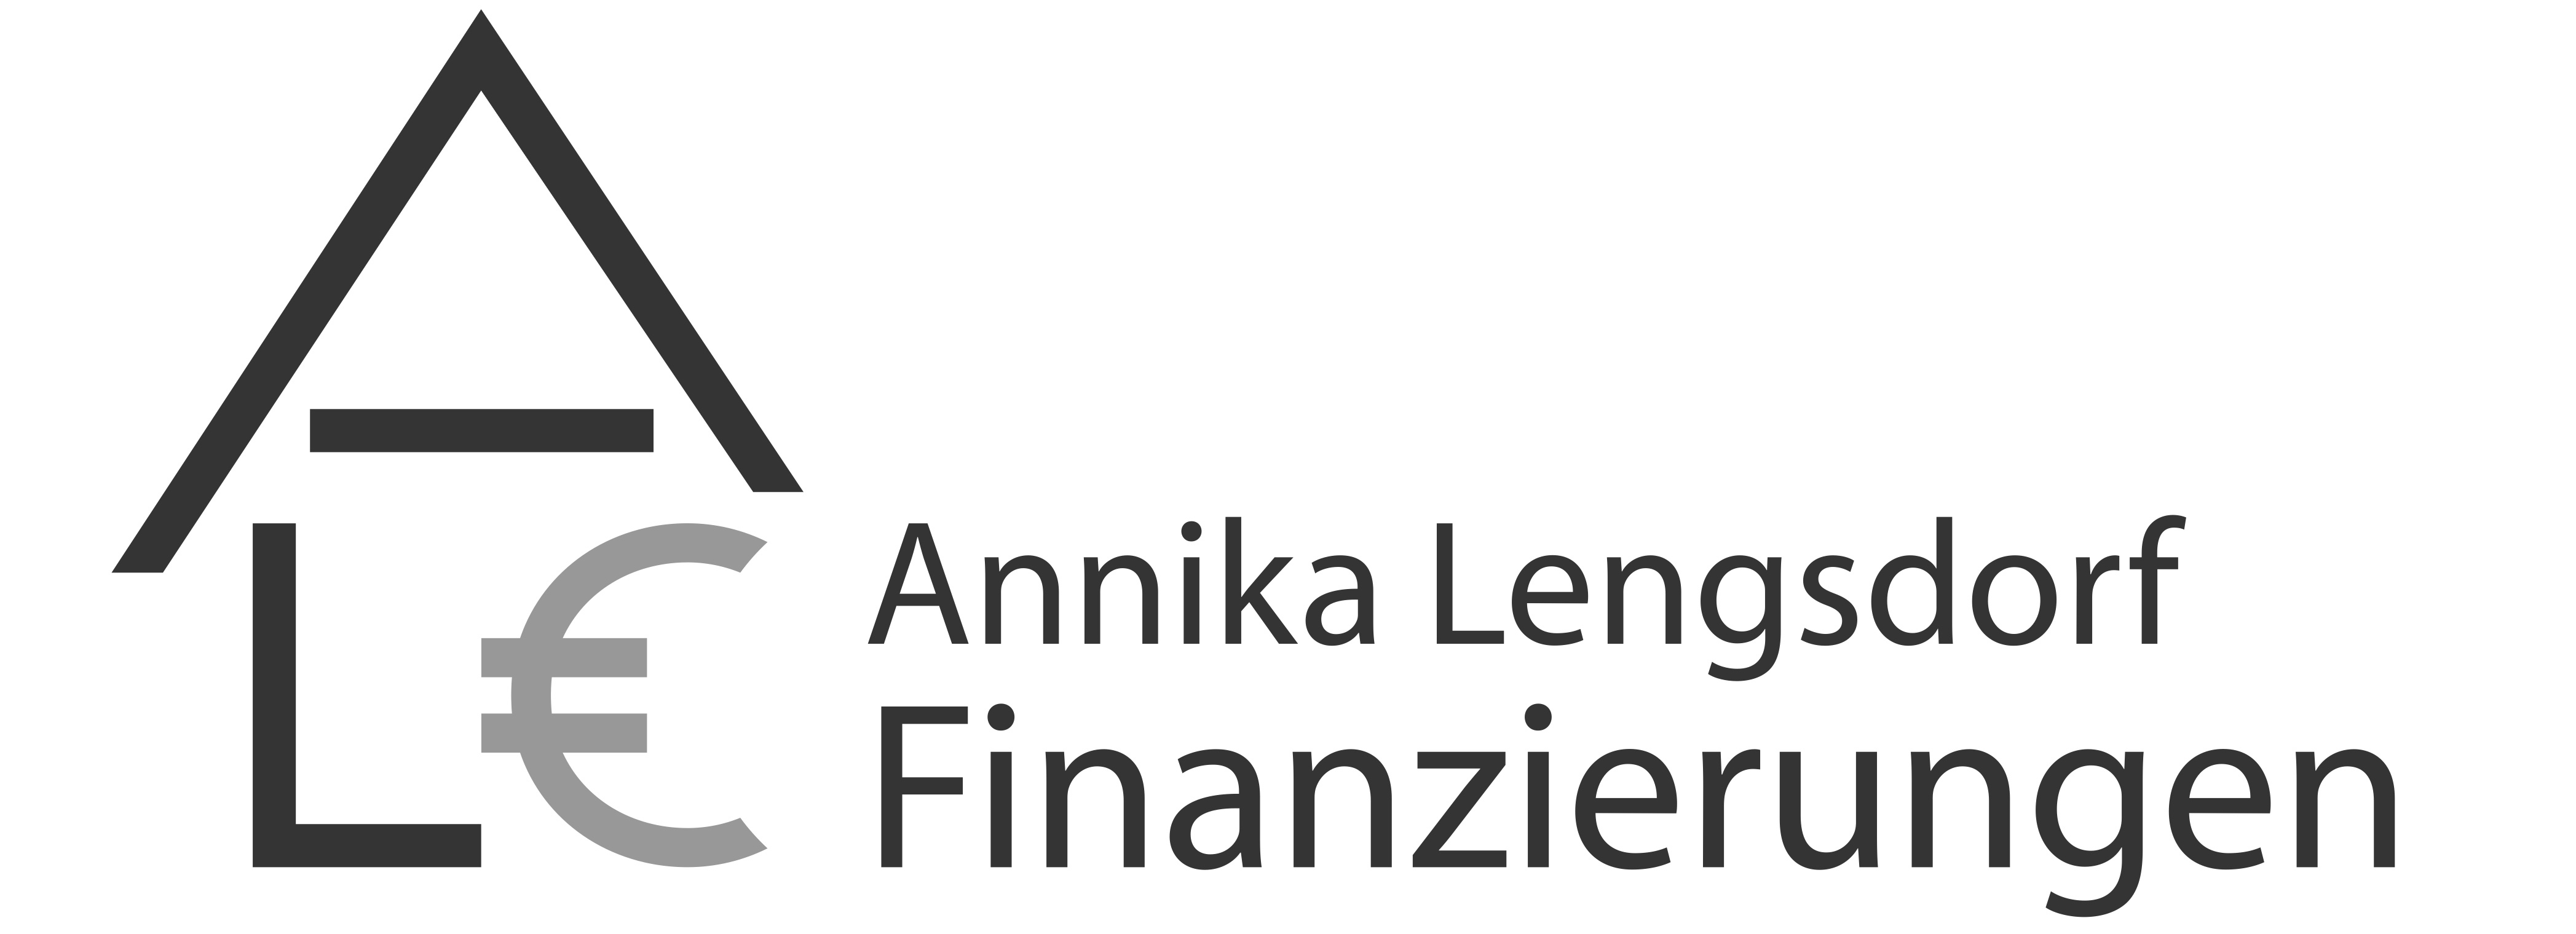 Annika Lengsdorf Finanzierungen